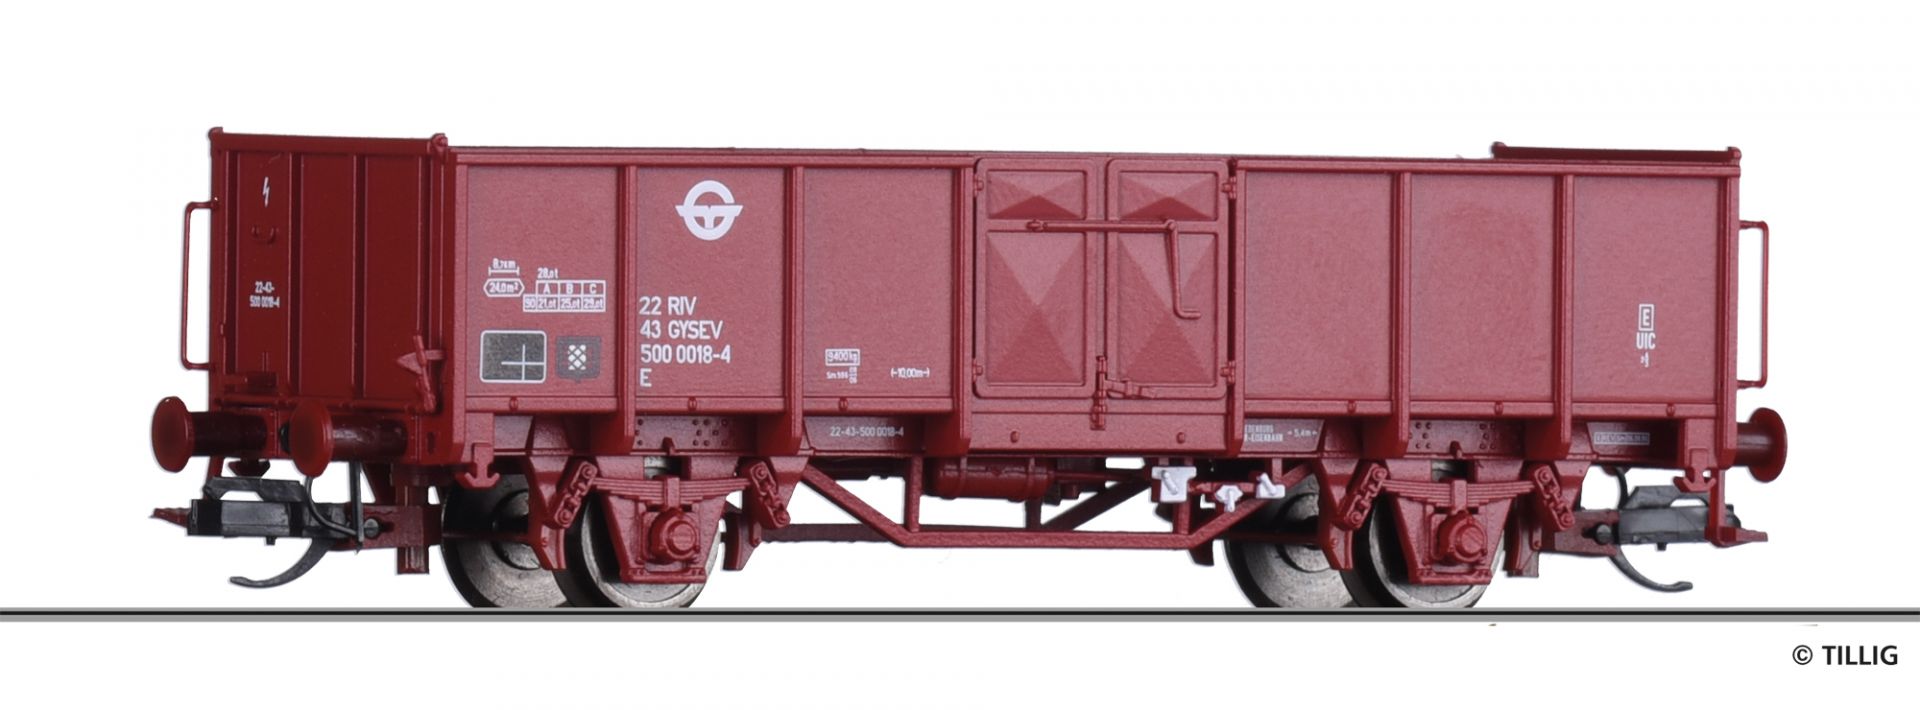 14076 | Offener Güterwagen GySEV